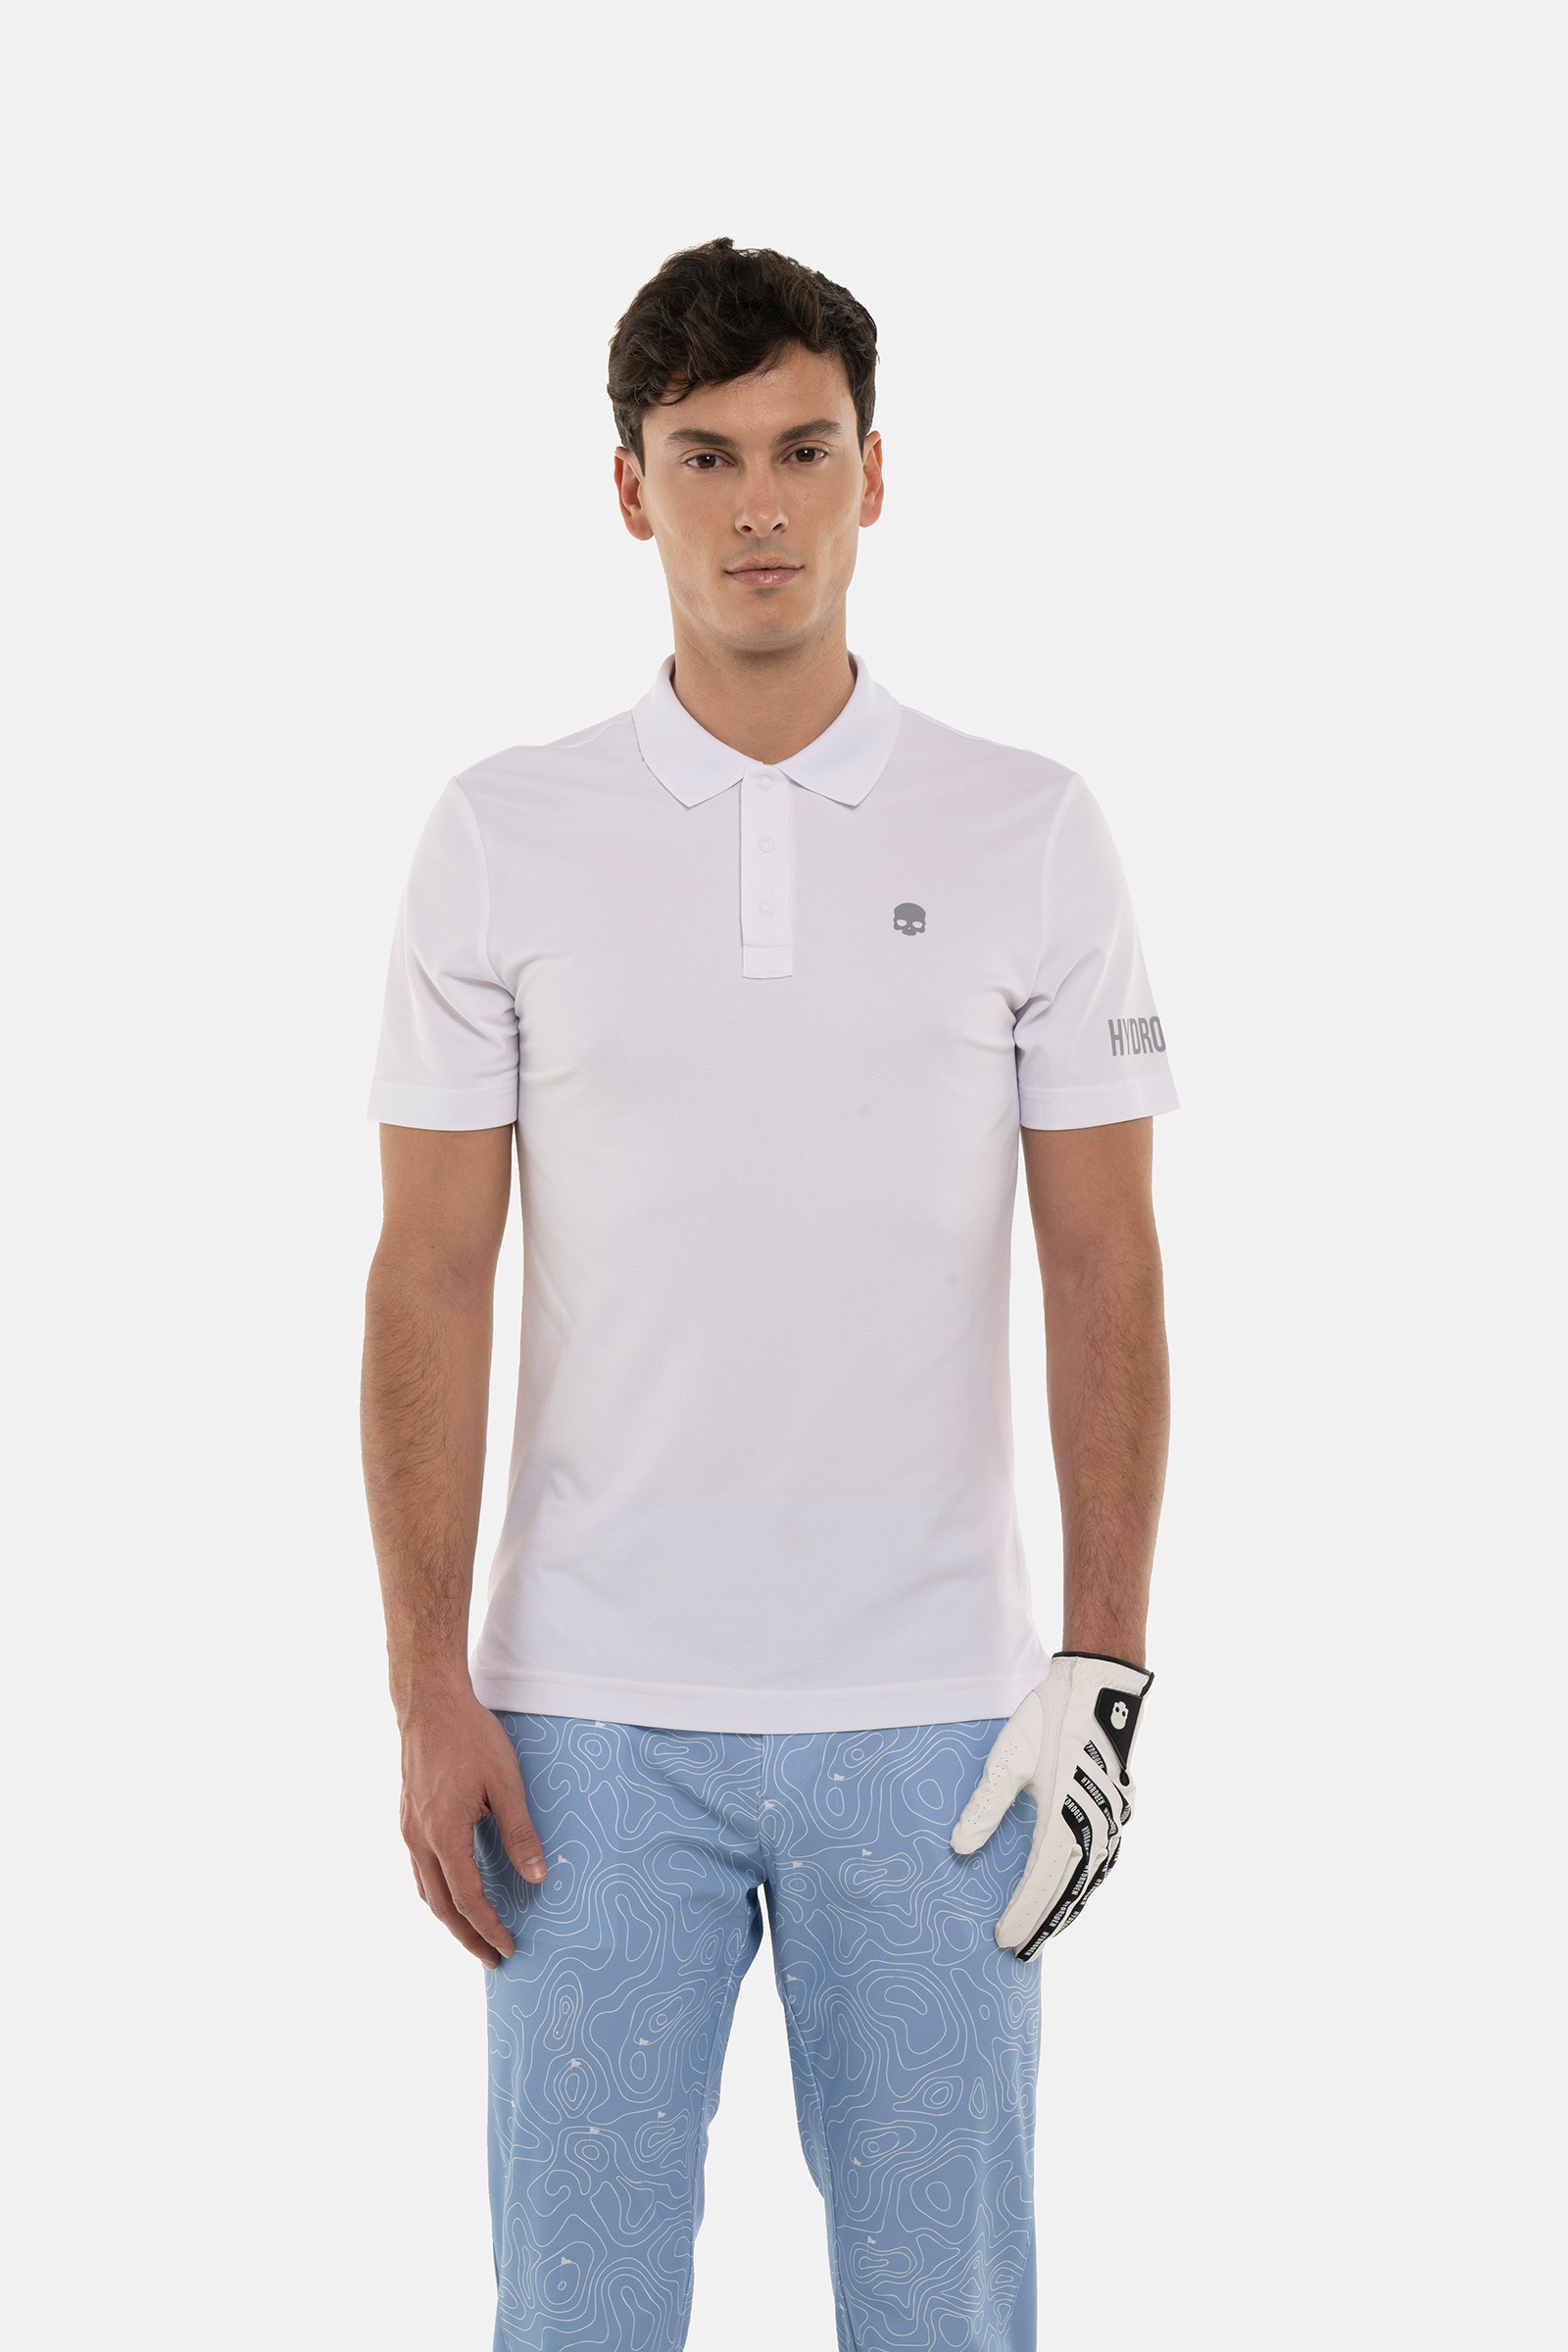 POLO A MANICA CORTA - WHITE - Abbigliamento sportivo | Hydrogen